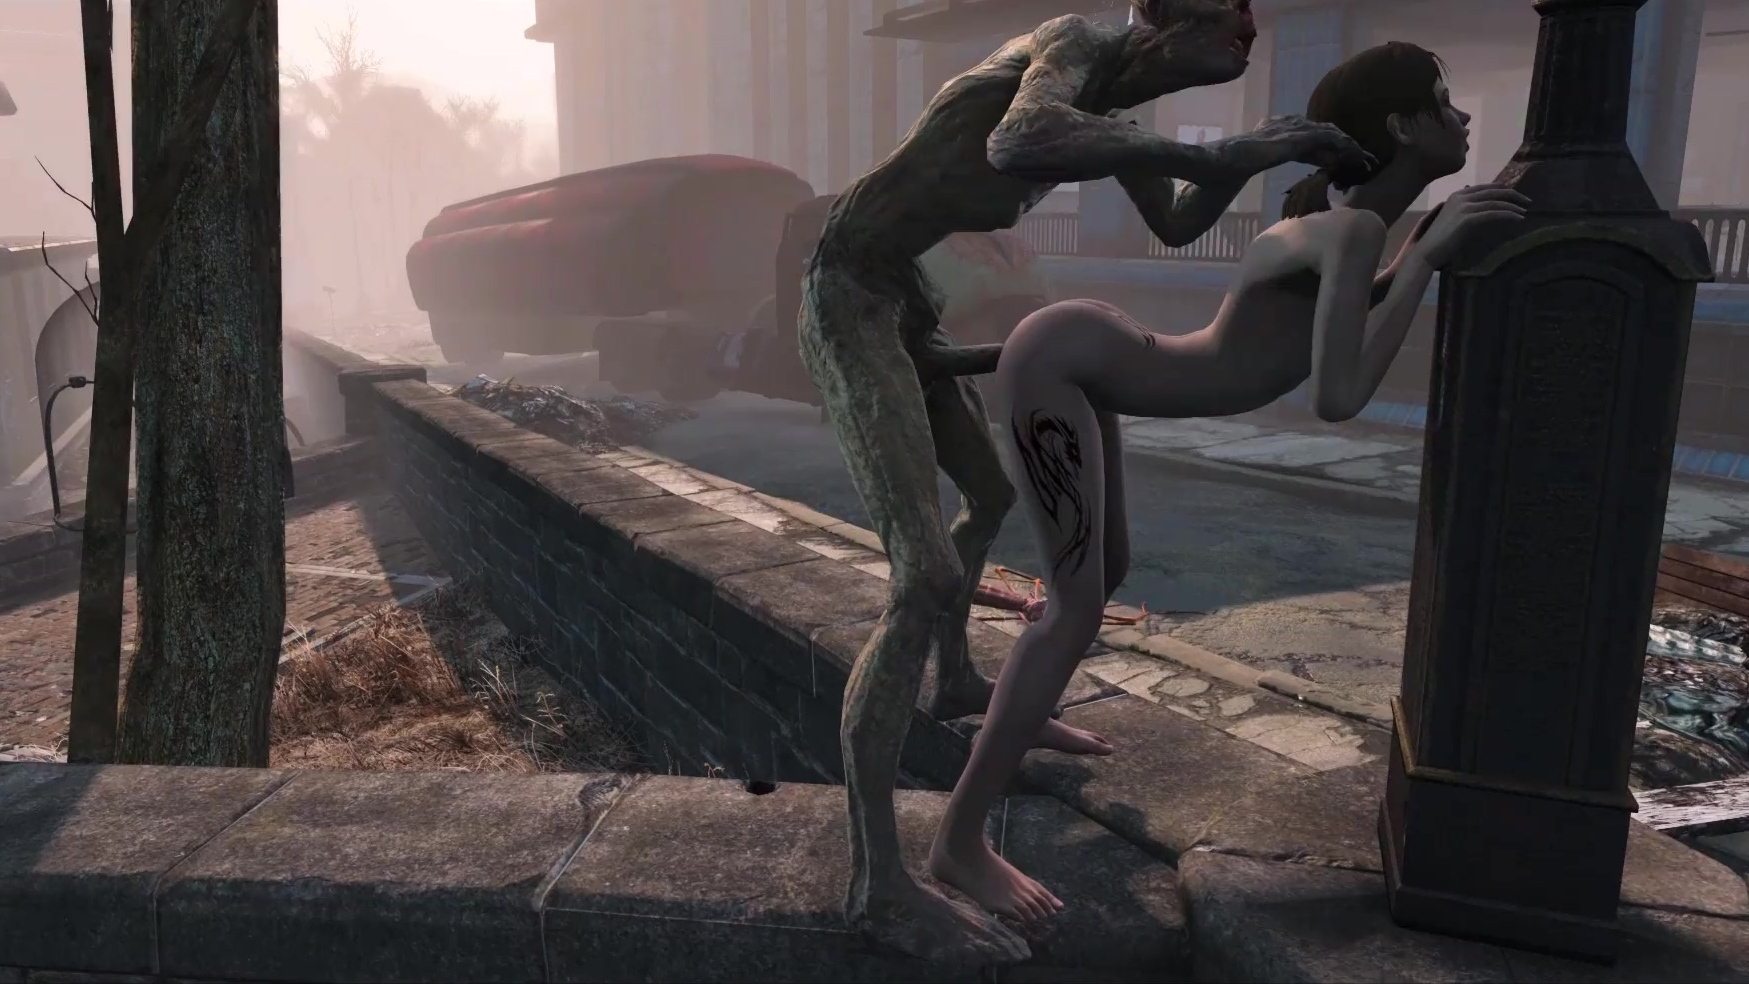 Fallout-Pornoparodie Dünne Schönheit wird in einer postapokalyptischen Welt von einem Zombie gefickt